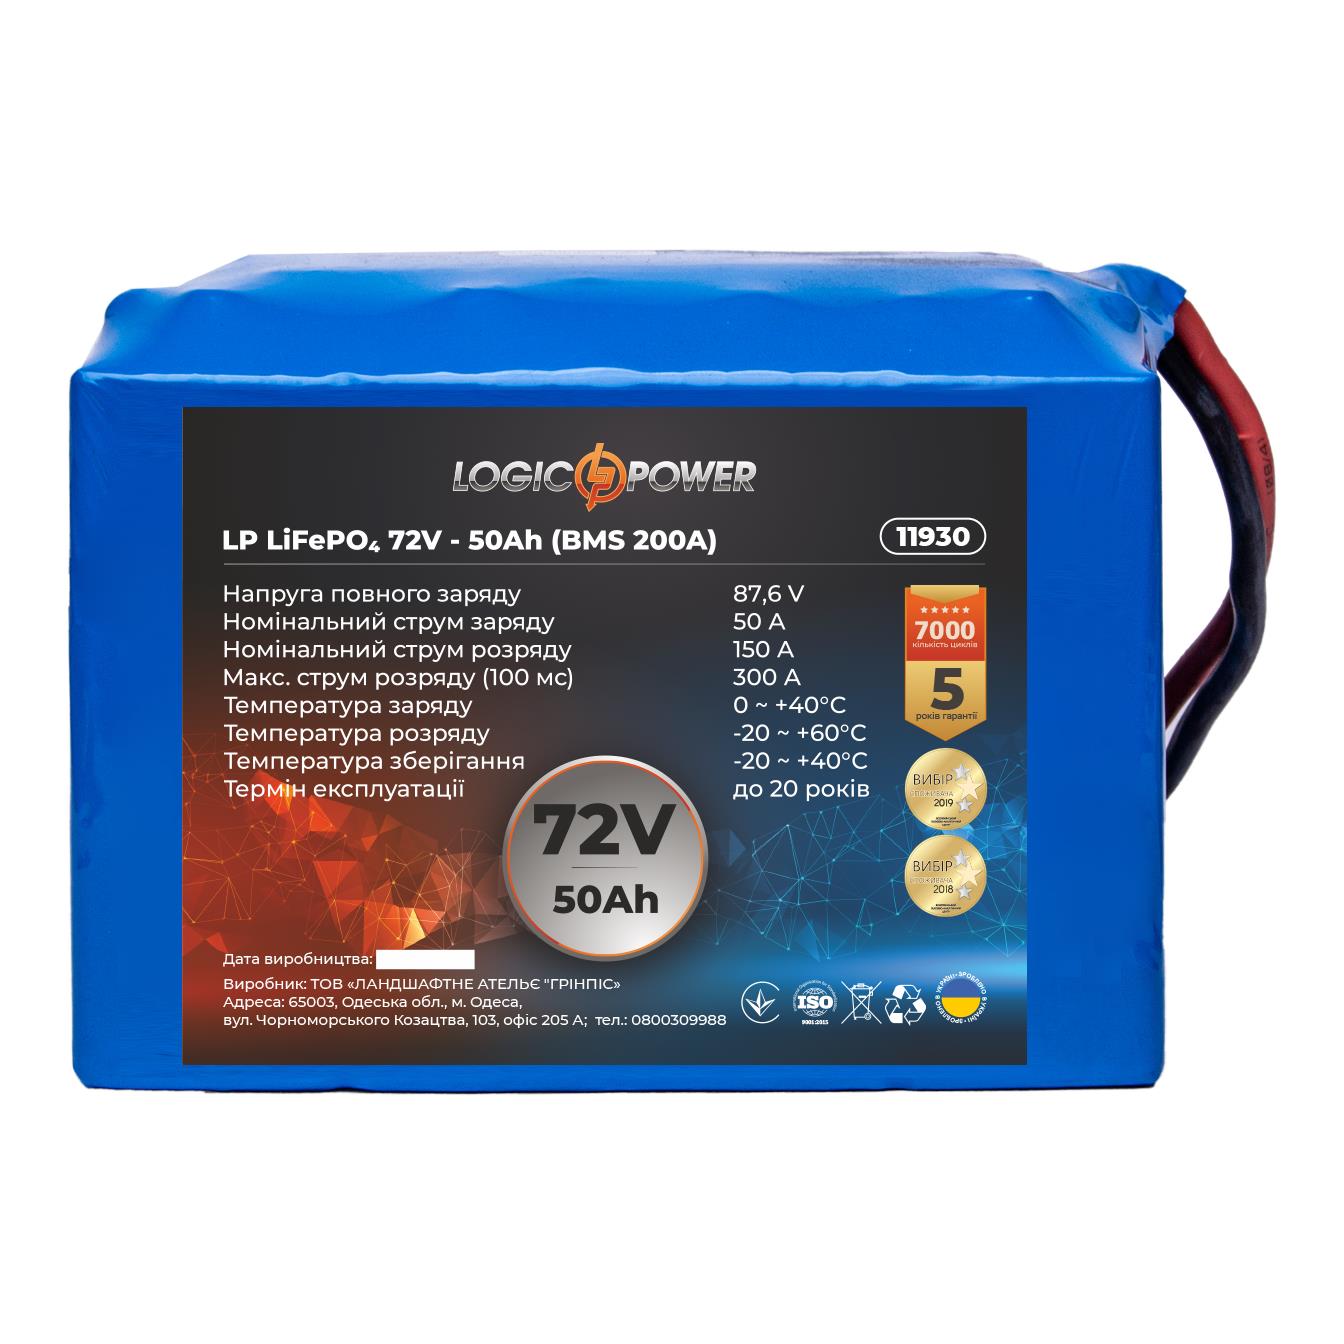 Аккумулятор литий-железо-фосфатный LogicPower LP LiFePO4 72V - 50 Ah (BMS 200A) (11930)